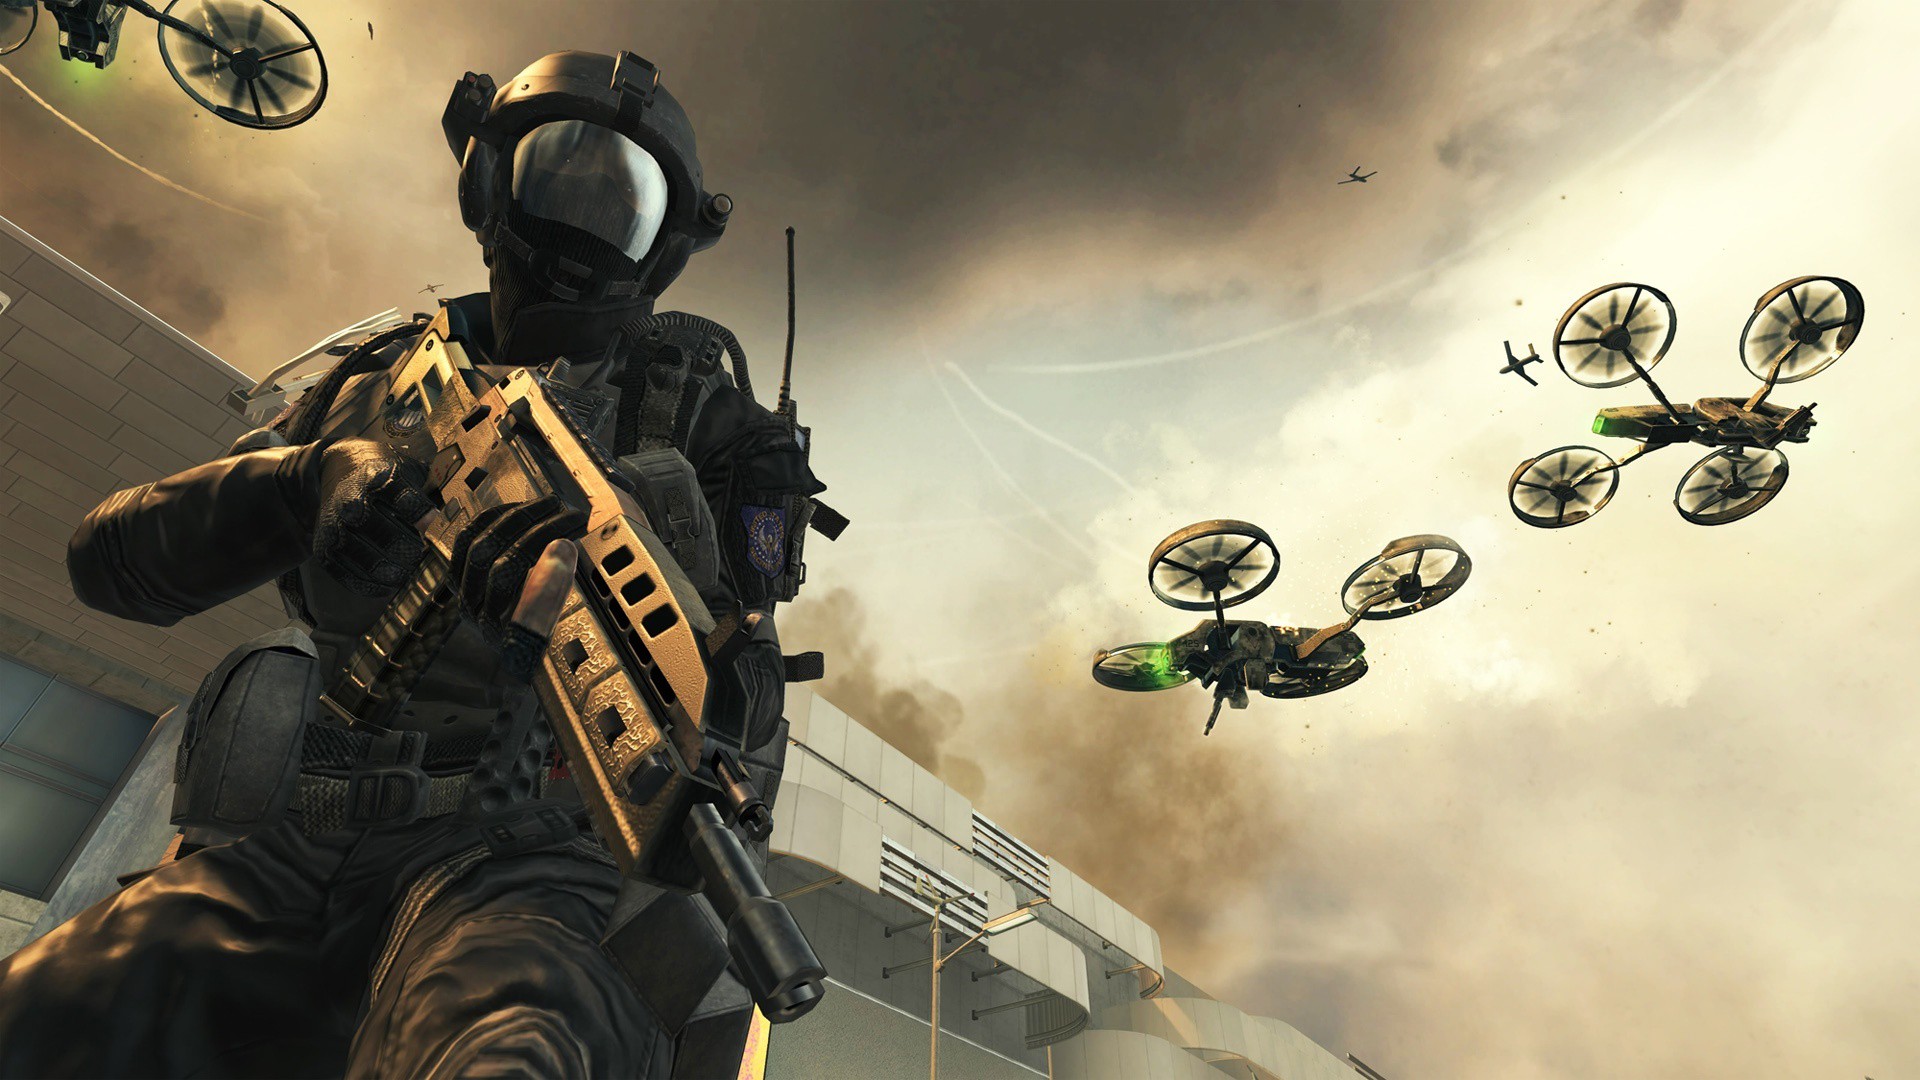 EXCLUSIVO: Call of Duty 2025 es una secuela semifuturista de Black Ops 2